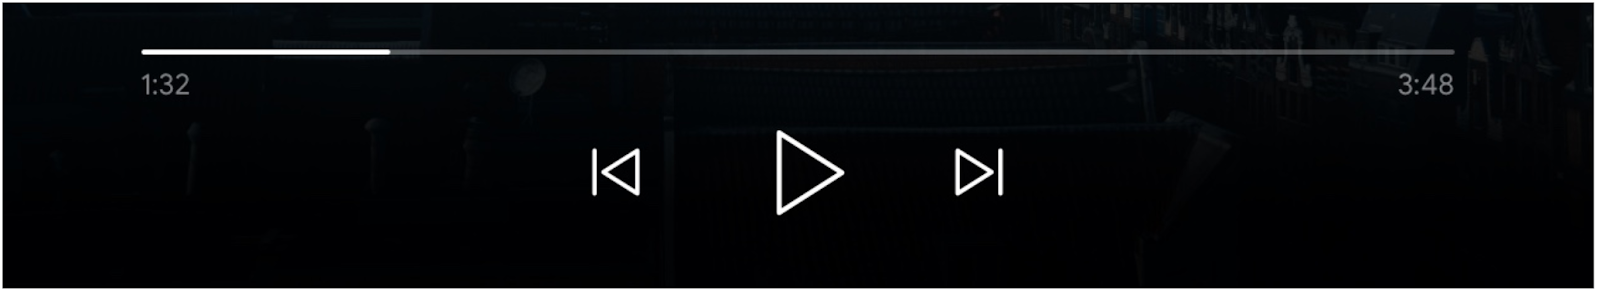 Imagem dos controles do player de mídia: barra de progresso, botão &quot;Reproduzir&quot; e botões &quot;Adicionar à fila&quot; e &quot;Adicionar à fila&quot; ativados